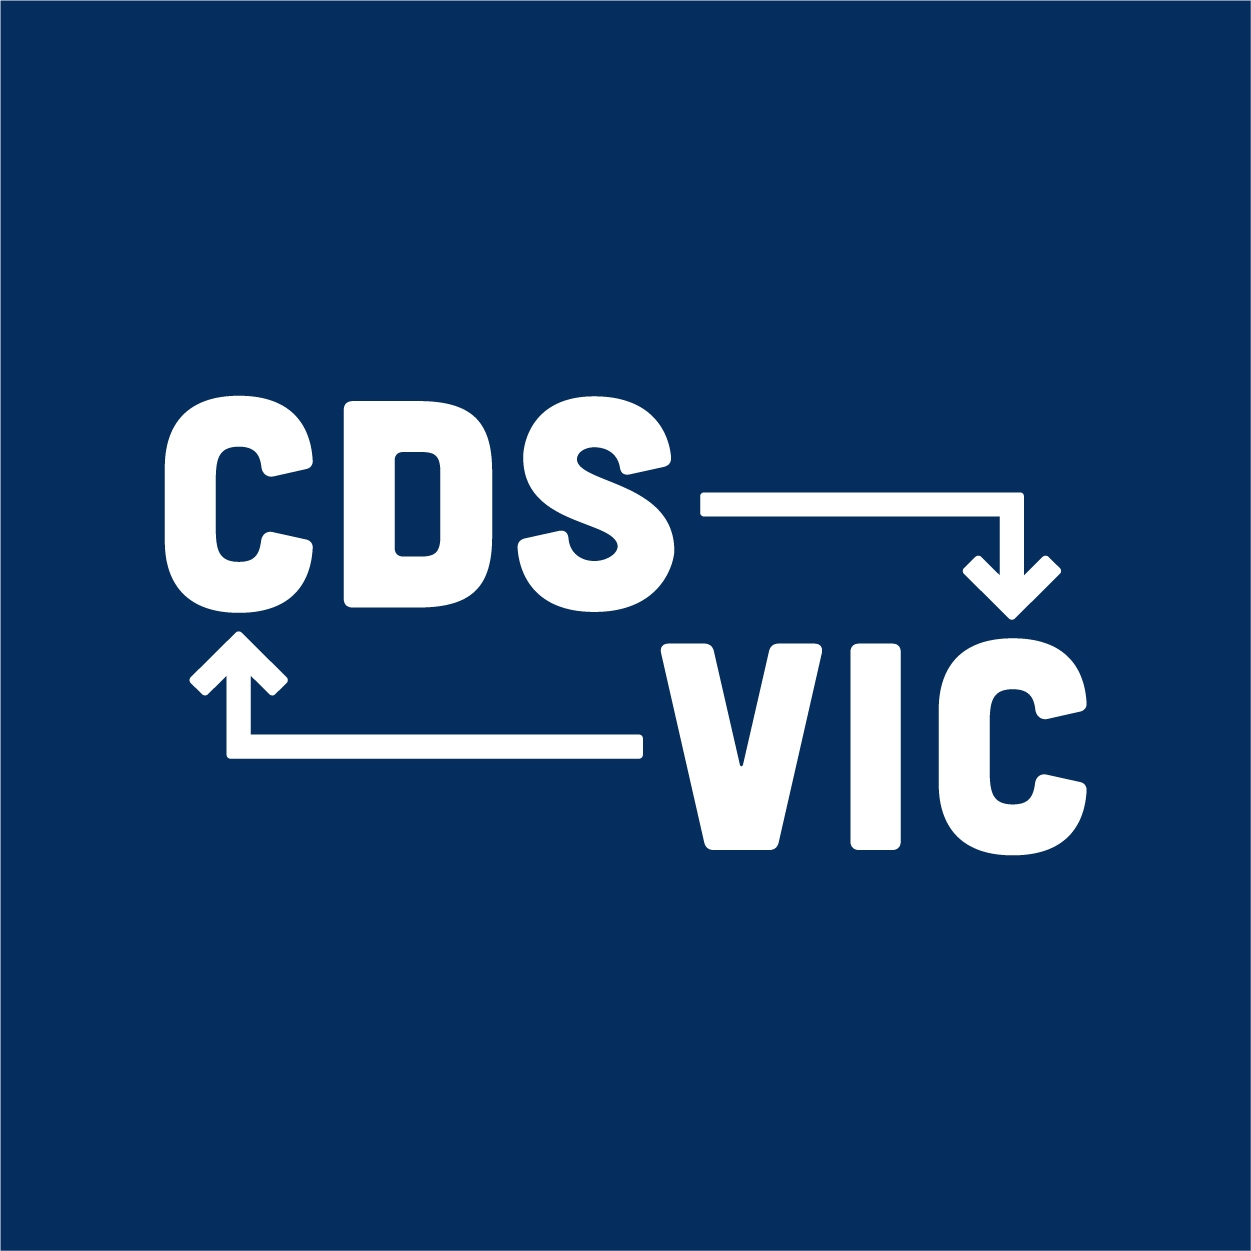 CDS Victoria